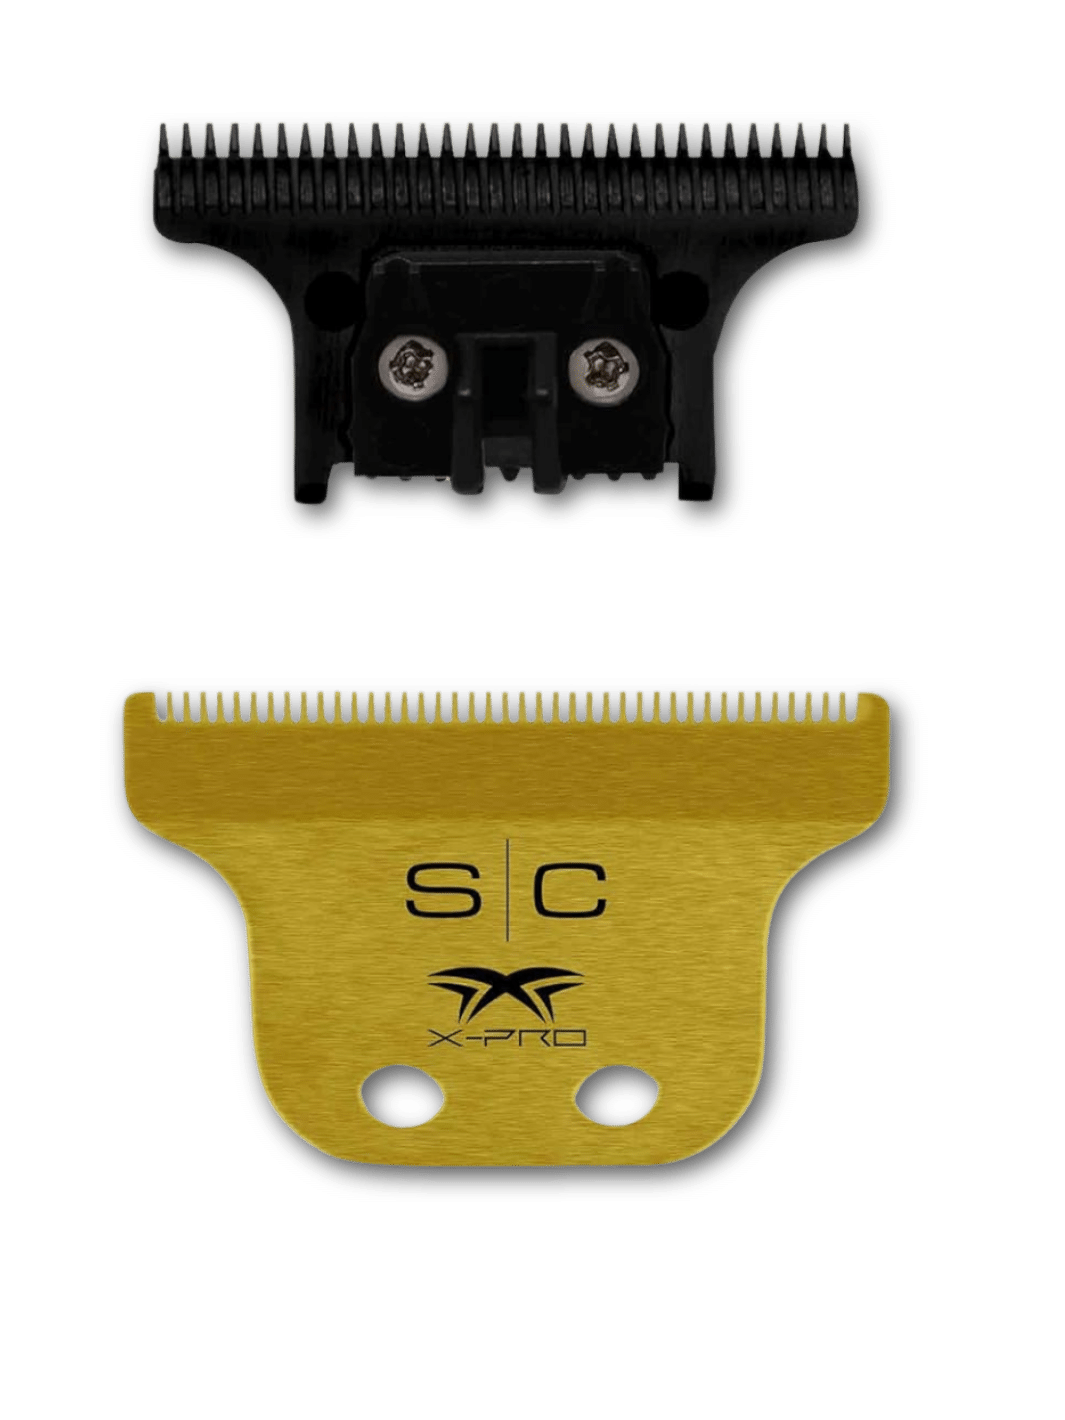 STYLECRAFT X-PRO Classic Gold und The One DLC Blade, hochwertige Gold Titanium und DLC Schneidklingen, verfügbar bei Phullcutz.